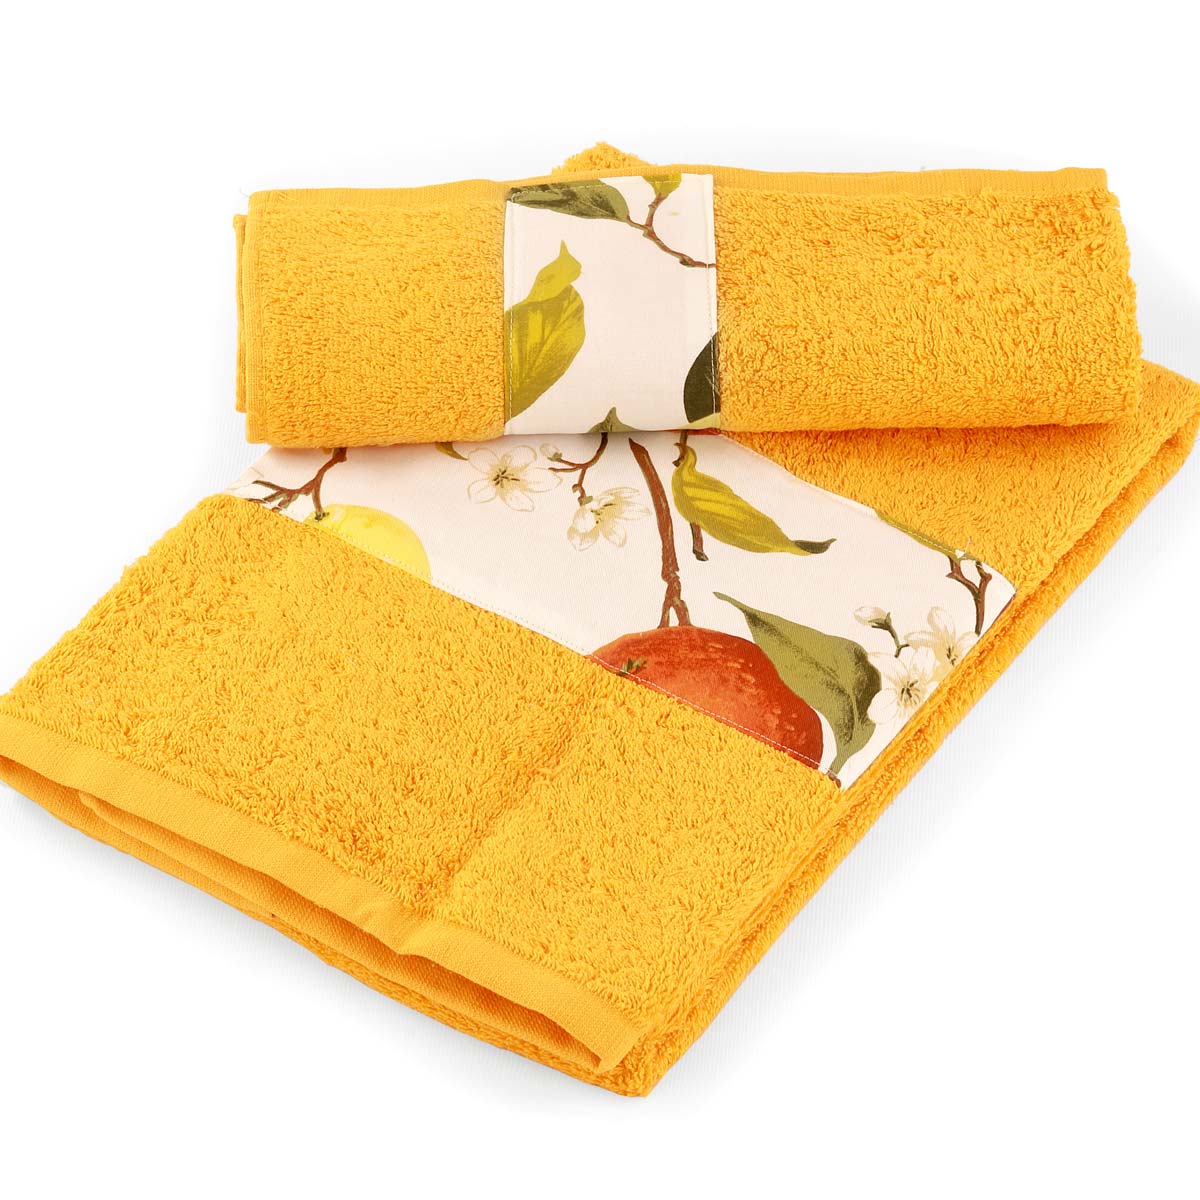 1+1 asciugamani in spugna di colore arancio con balza agrumi e misure grandi